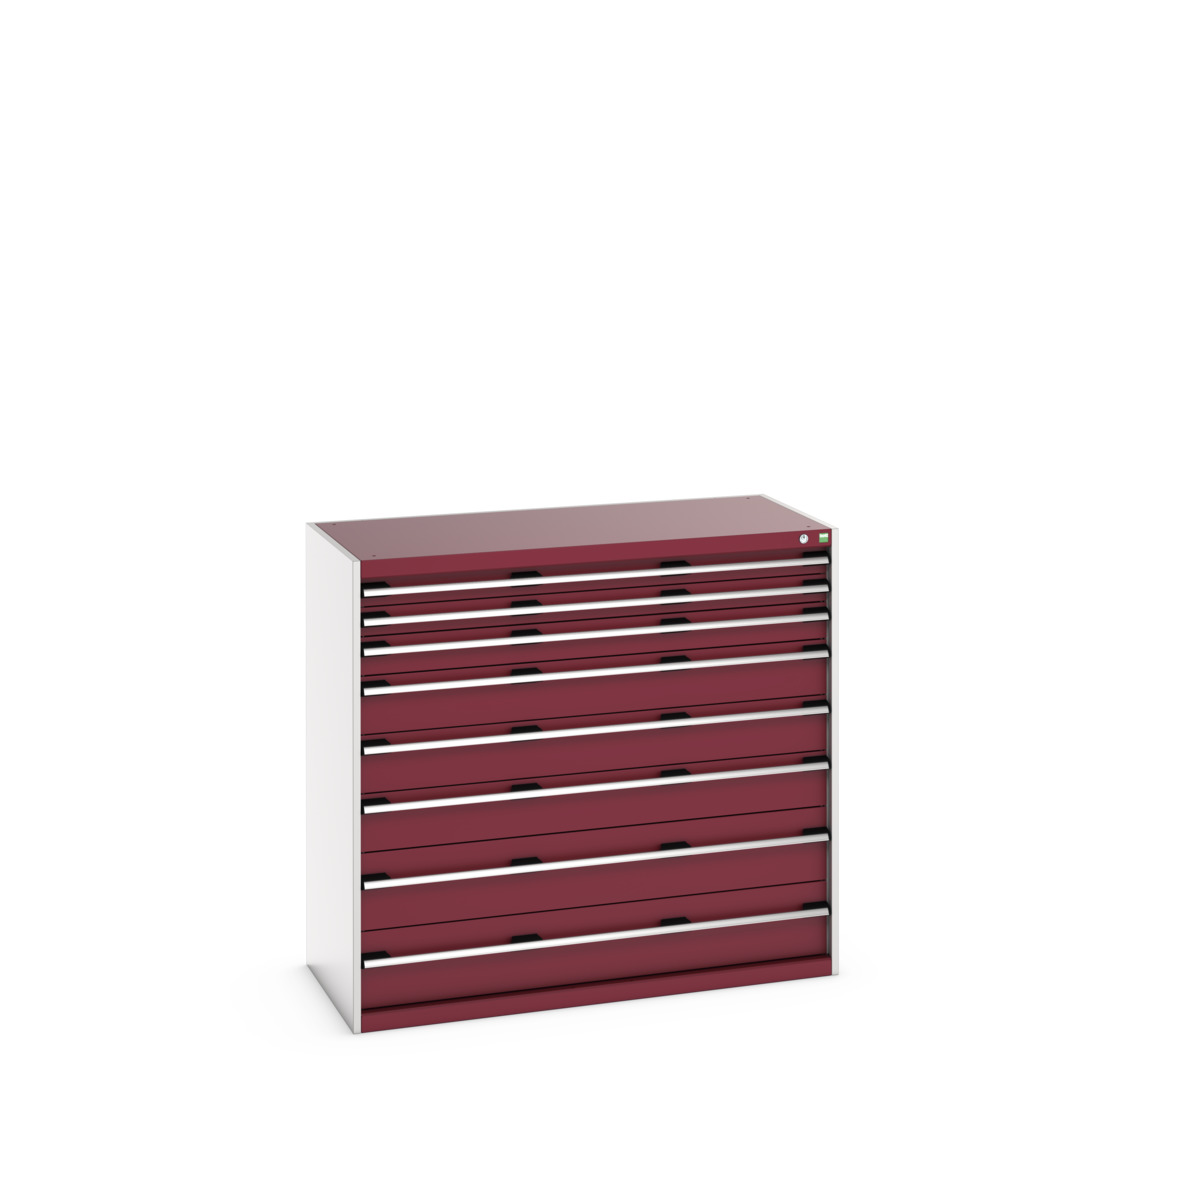 40022129.24V - cubio drawer cabinet